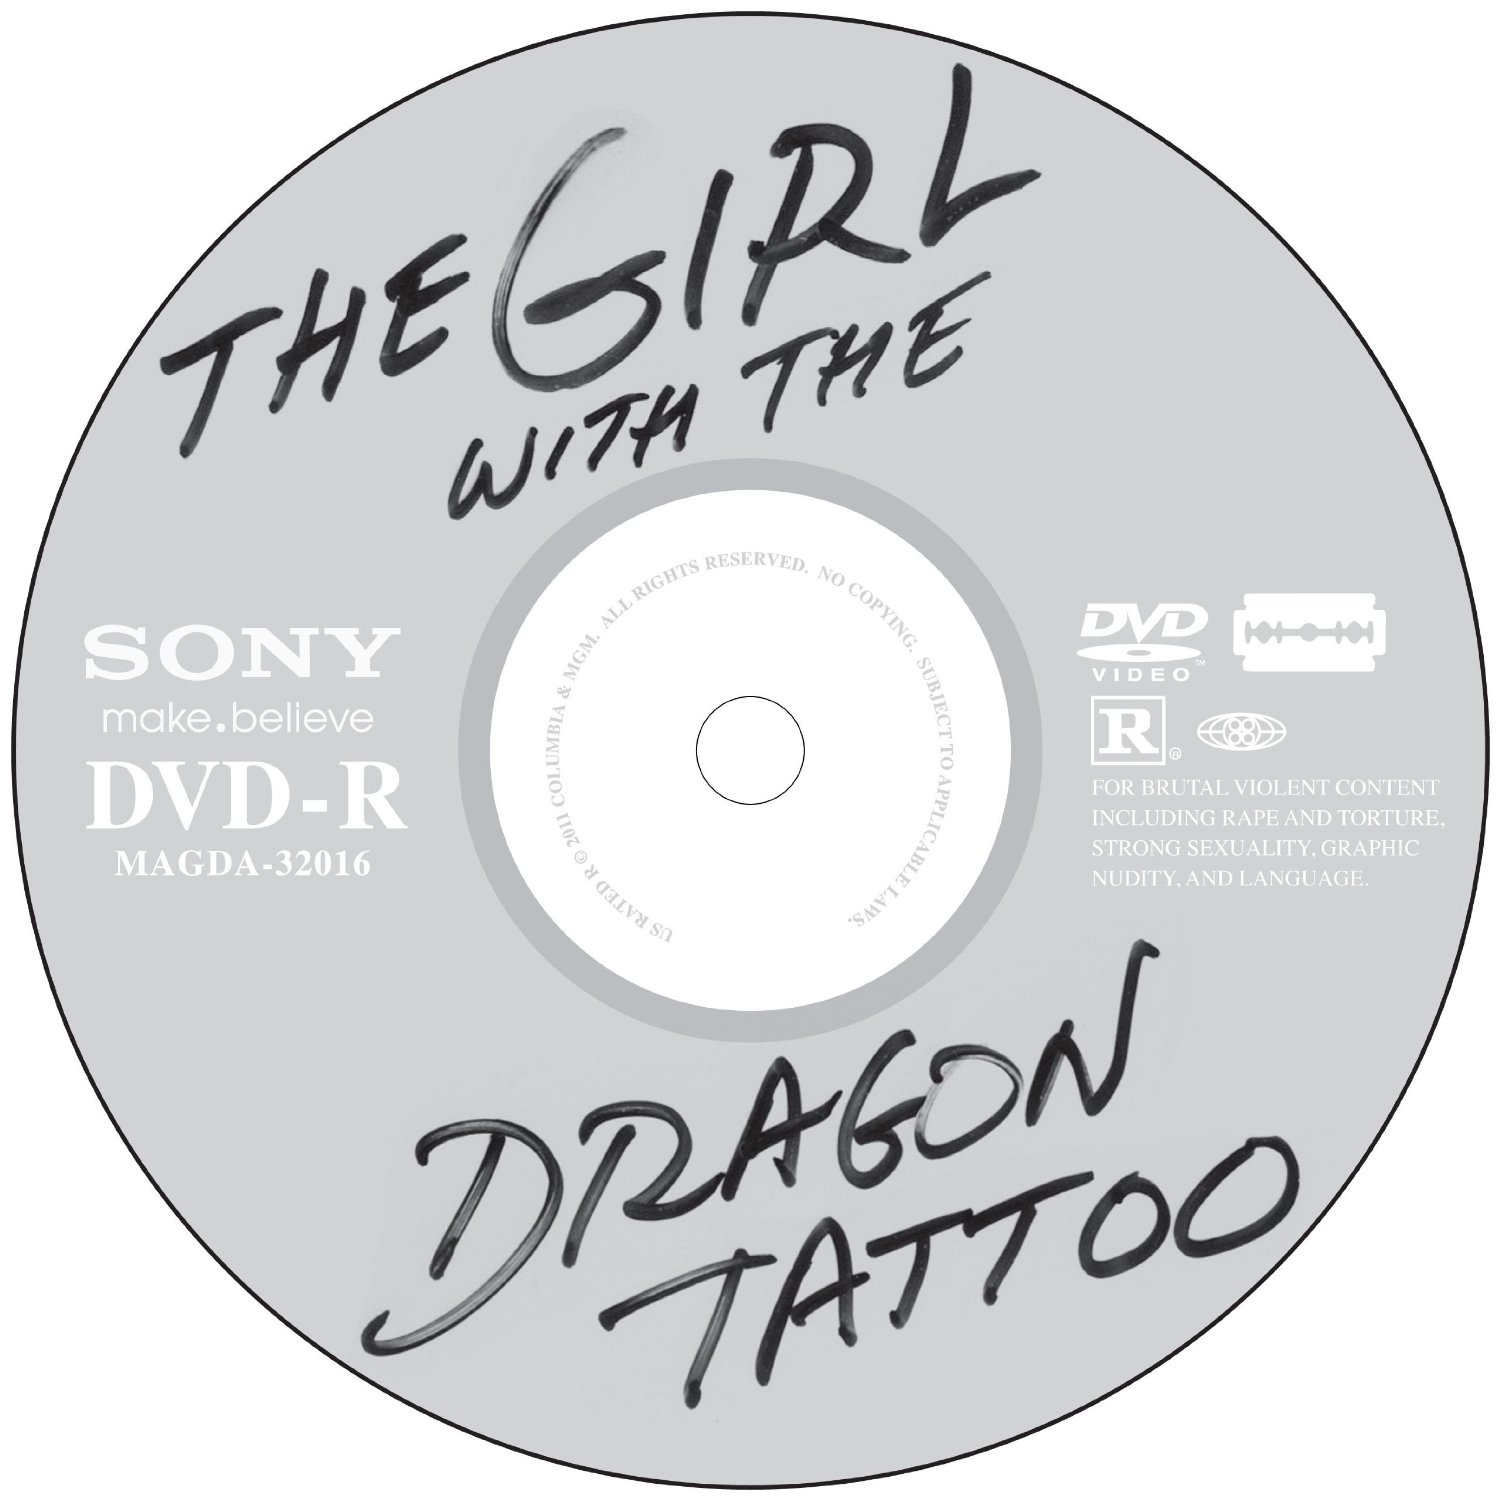 http://3.bp.blogspot.com/-T9DGHmlkeKE/T2qfIpl9k8I/AAAAAAAAAMI/Ht8hNpFQKak/s1600/Dragon+Tattoo+DVD.jpg